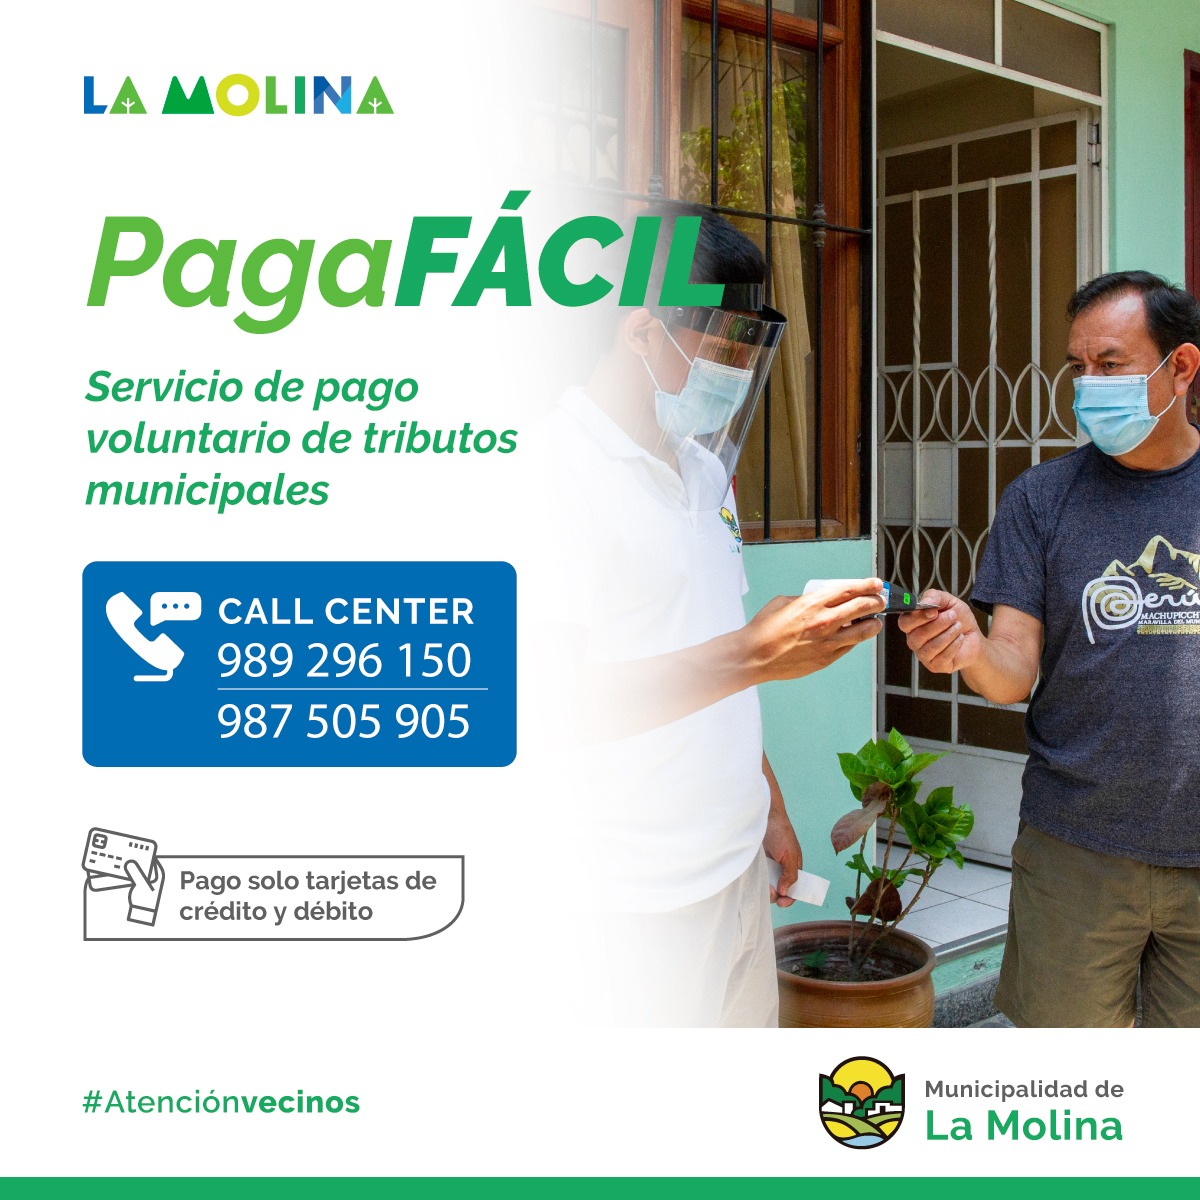 PAGA FÁCIL  Vecino molinense, recuerda que con nuestro programa Paga Fácil puedes realizar el pago de los tributos municipales sin salir de casa. Las unidades móviles llegarán a tu domicilio.